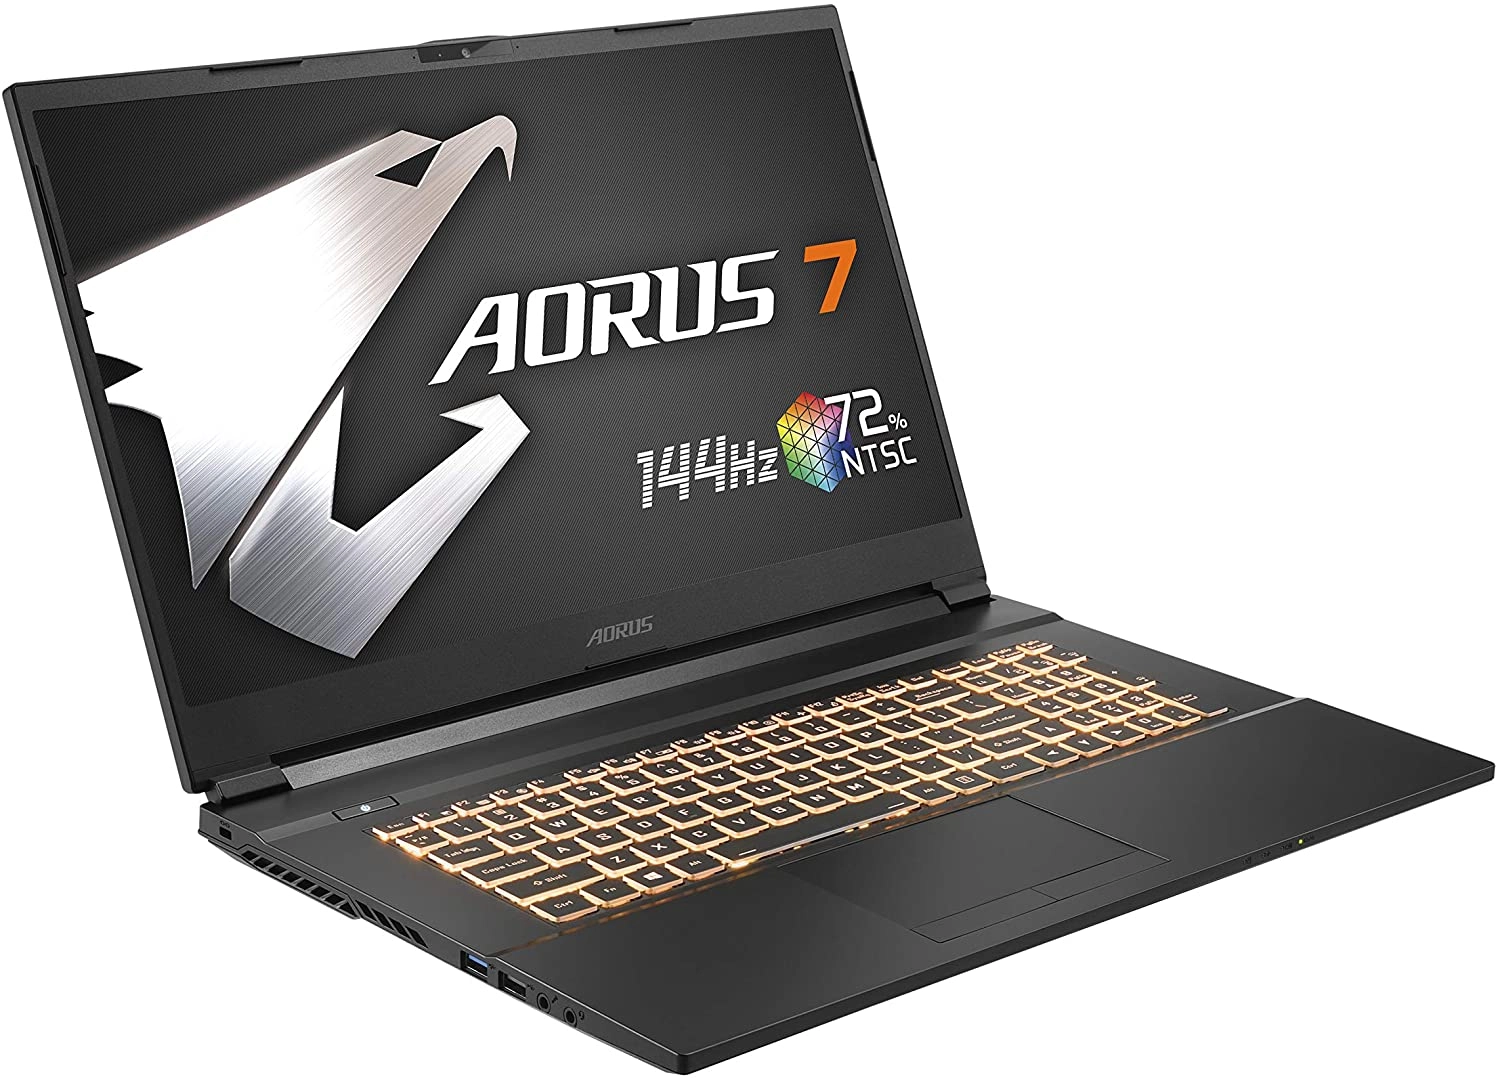 Gigabyte AORUS 7 KB-7ES1130SD laptop image